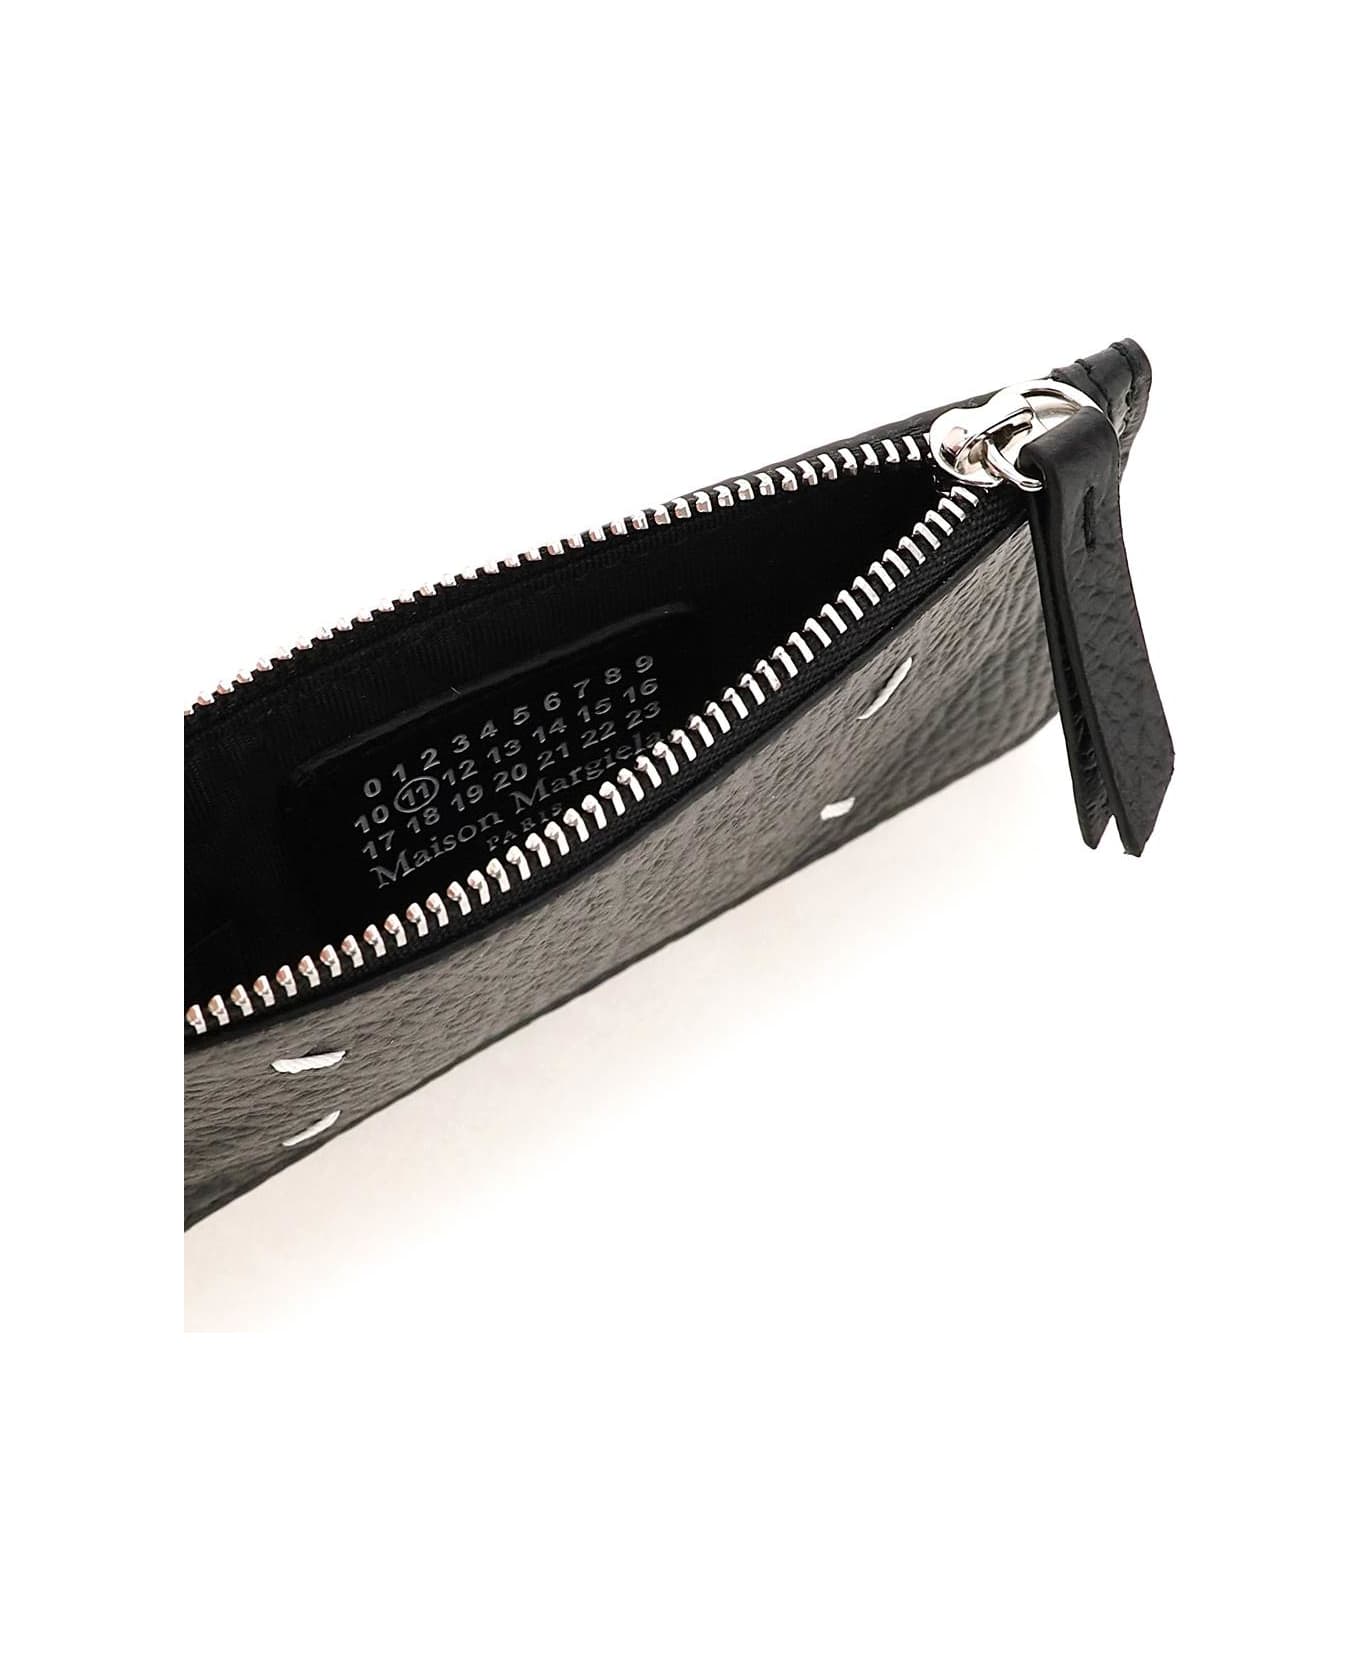 Maison Margiela Leather Zipped Cardholder - T8013 財布